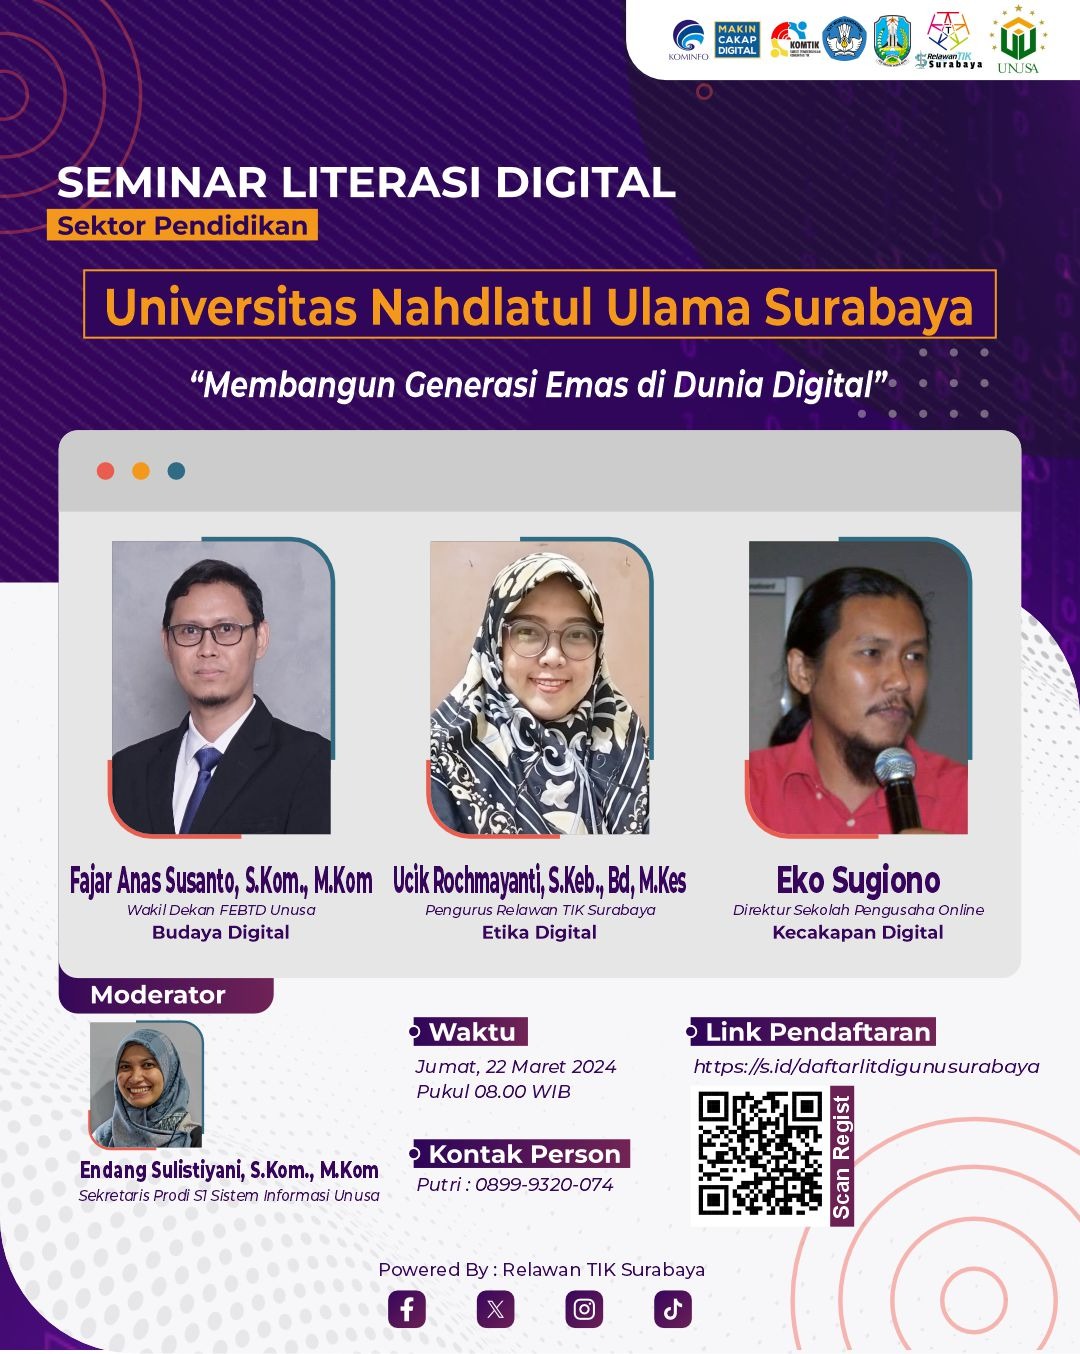 Seminar Literasi Digital